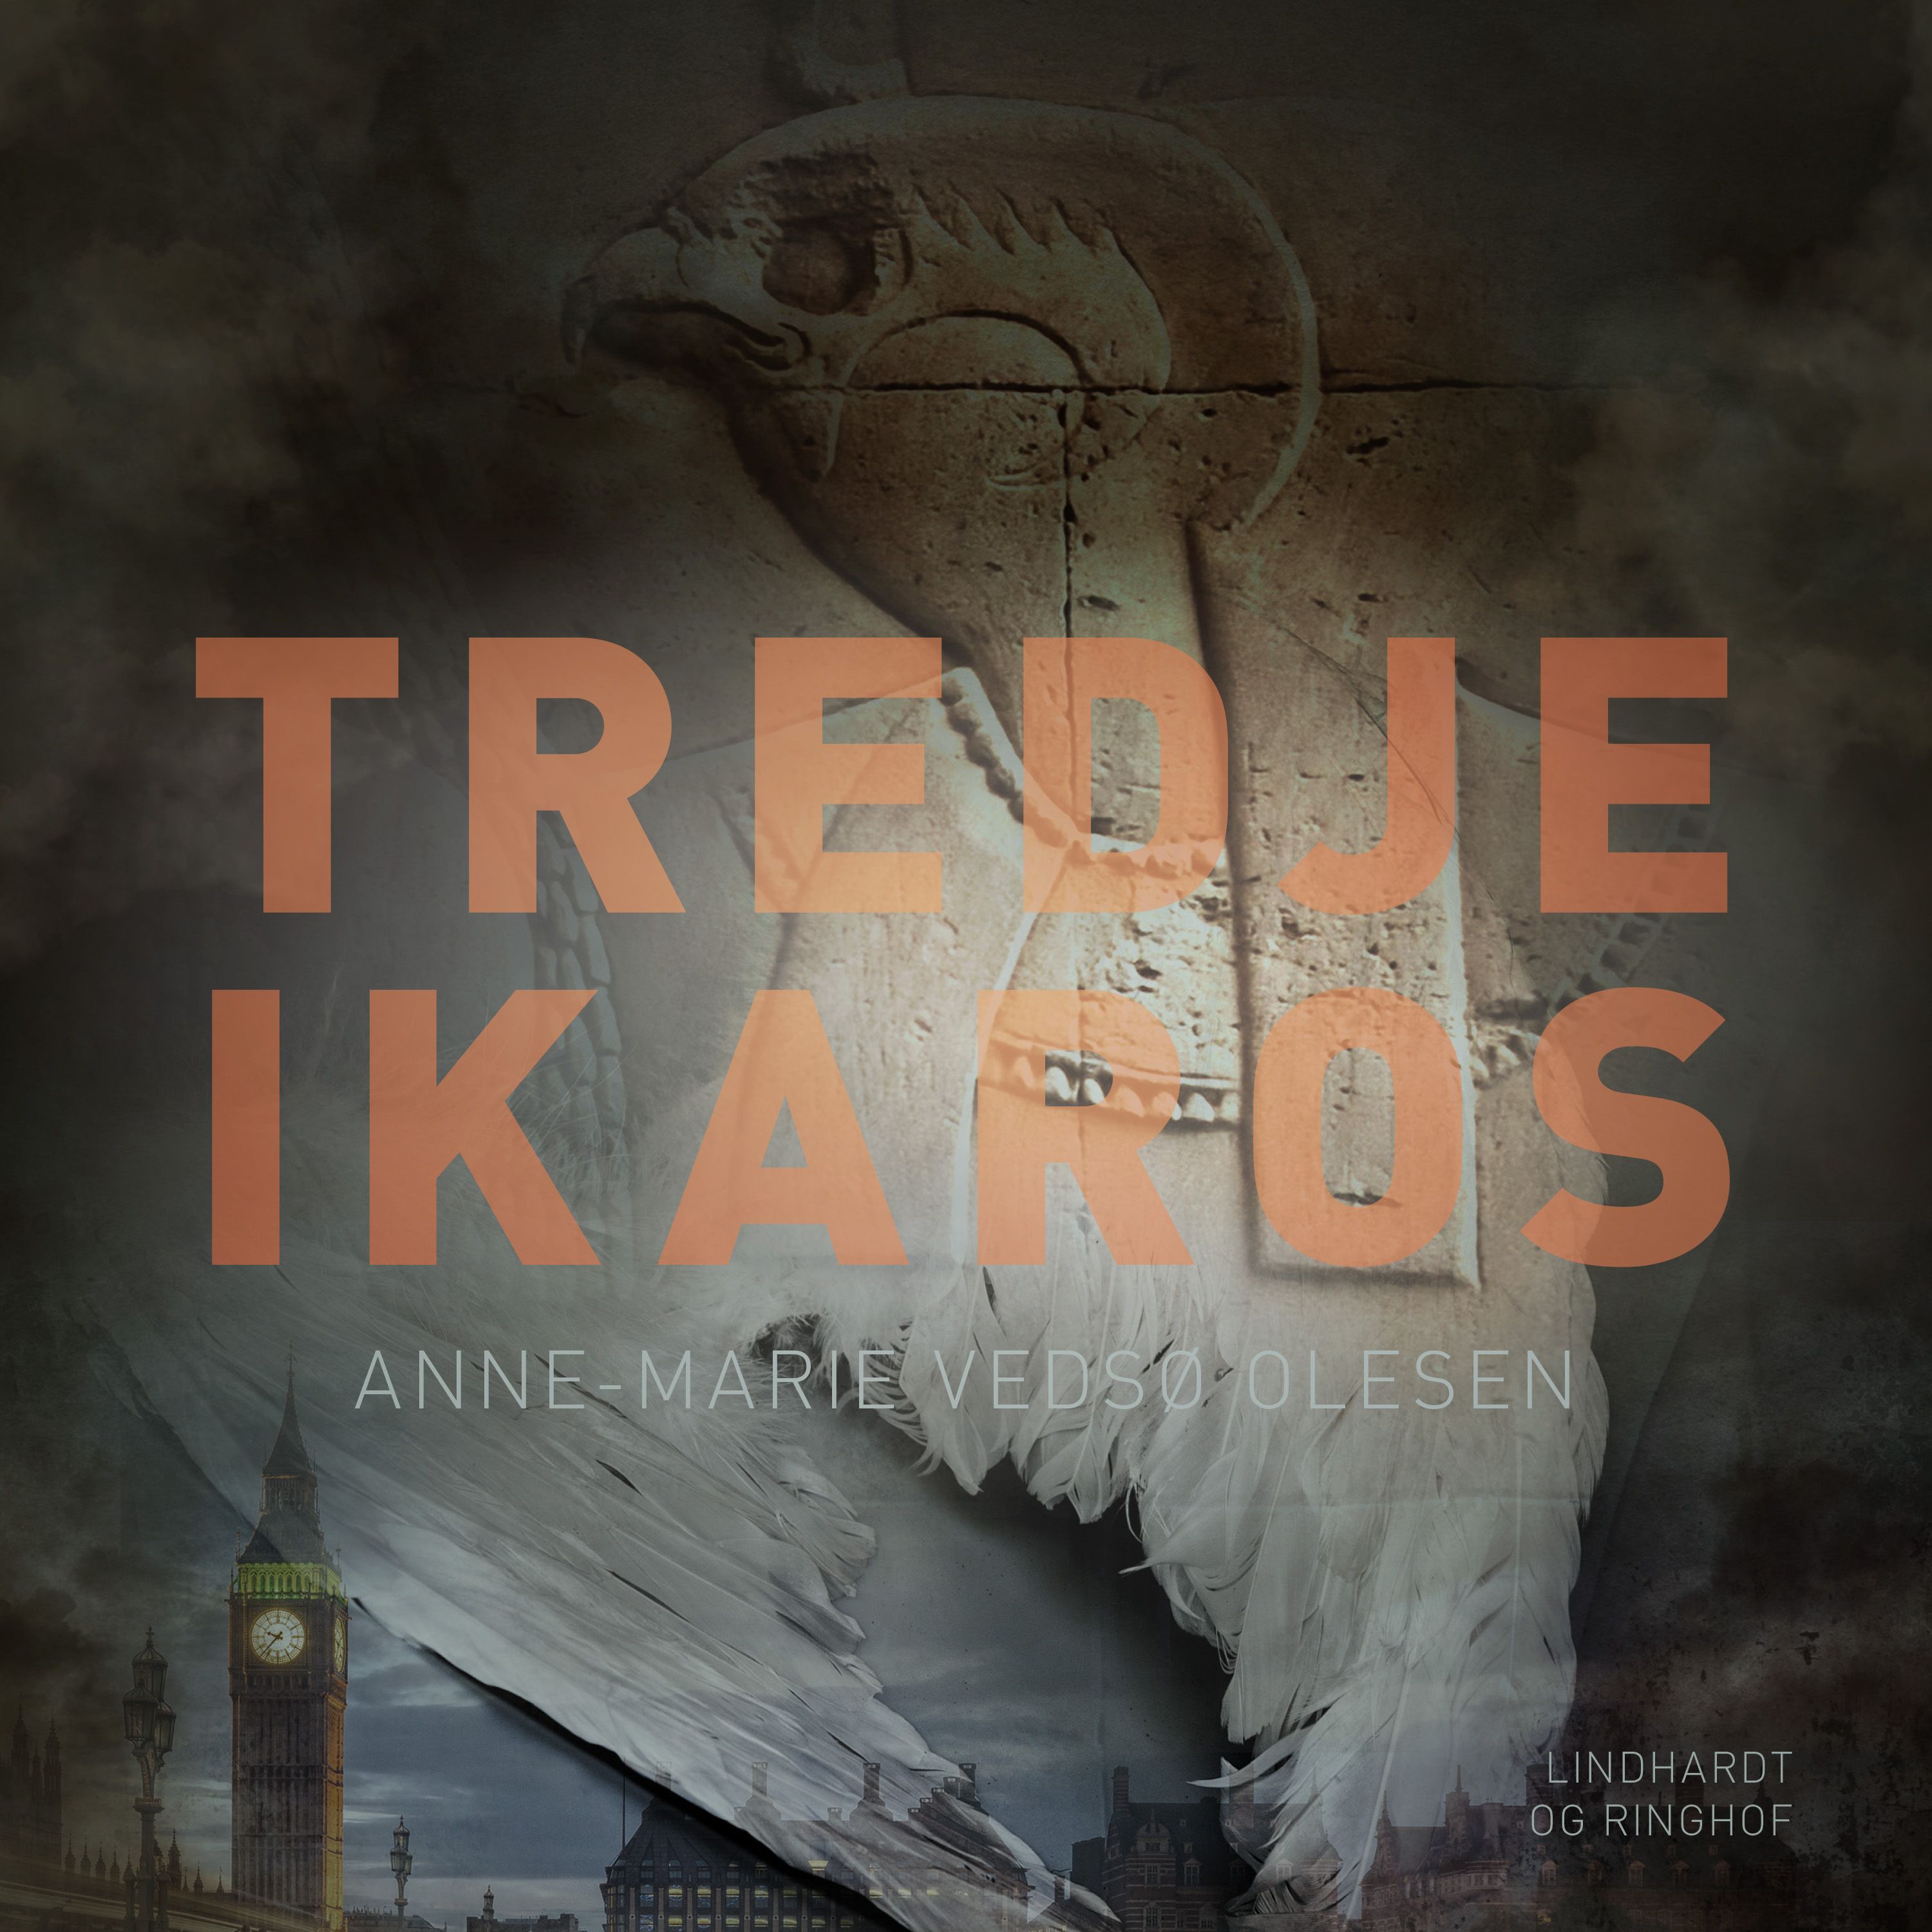 Tredje Ikaros, ljudbok av Anne-Marie Vedsø Olesen